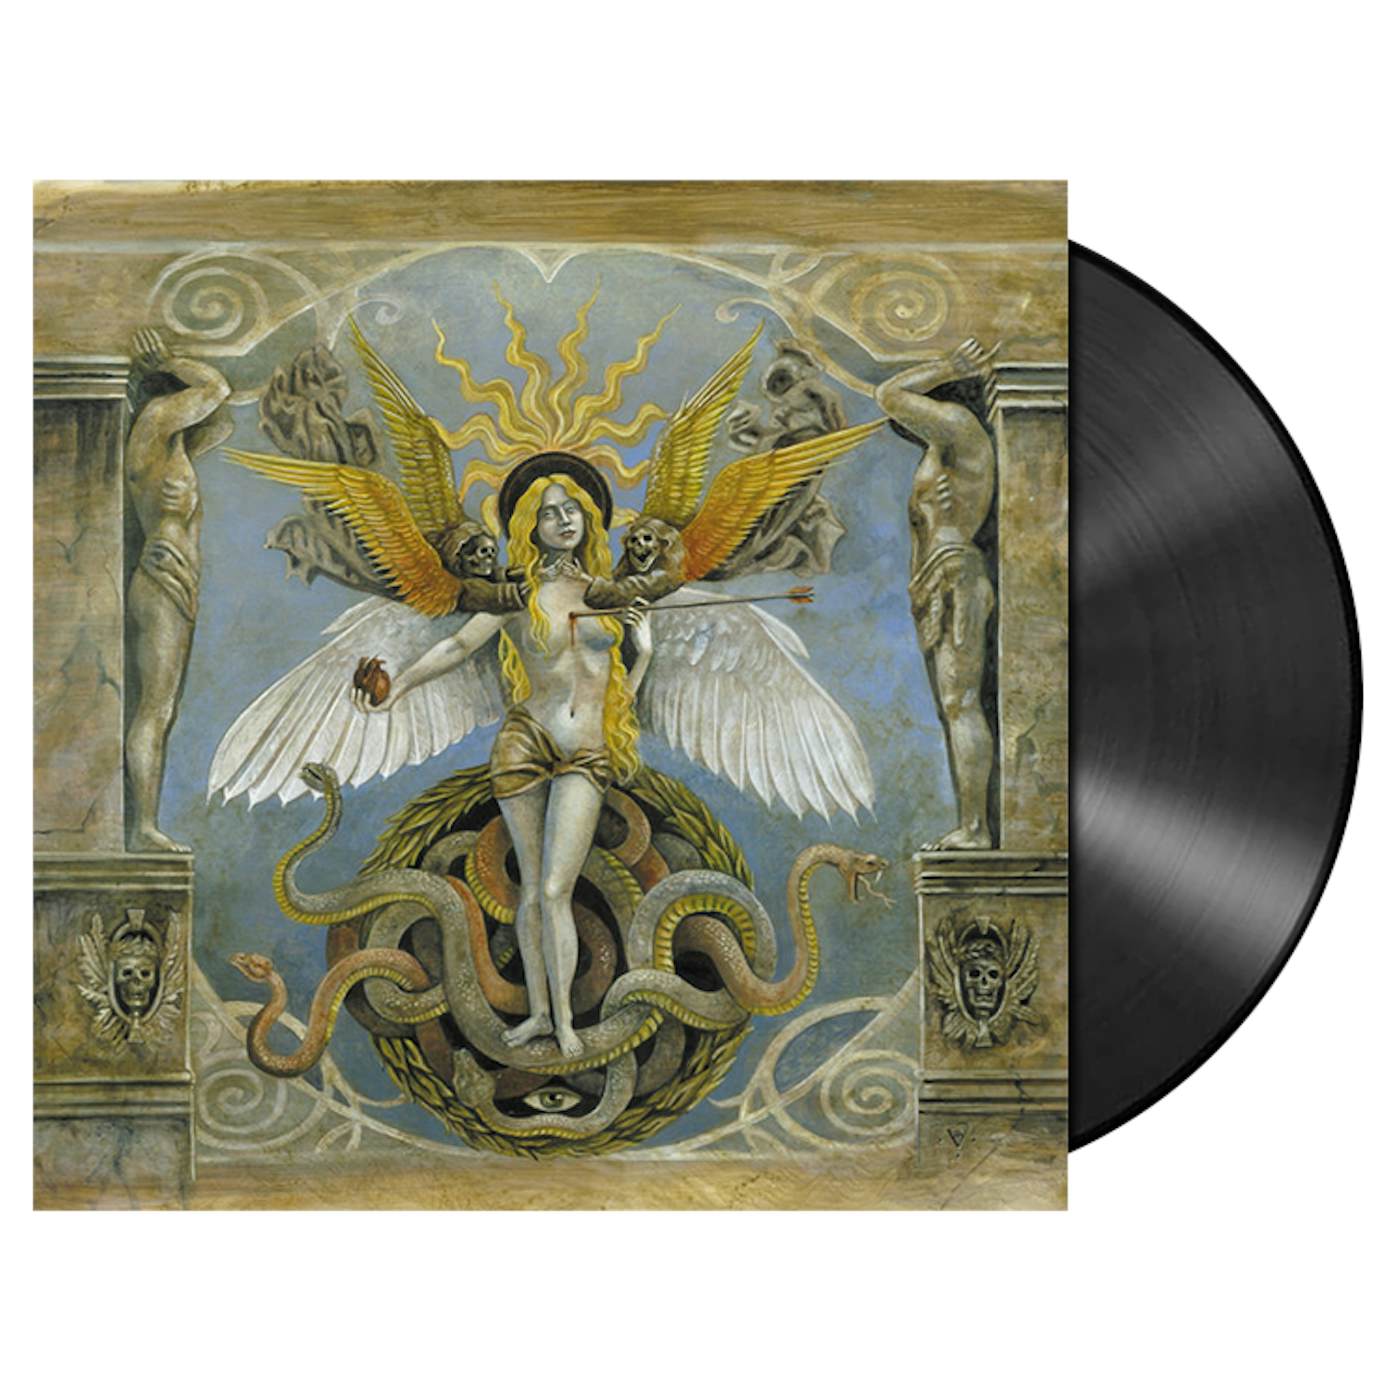 AOSOTH - 'V: The Inside Scriptures' LP (Vinyl)